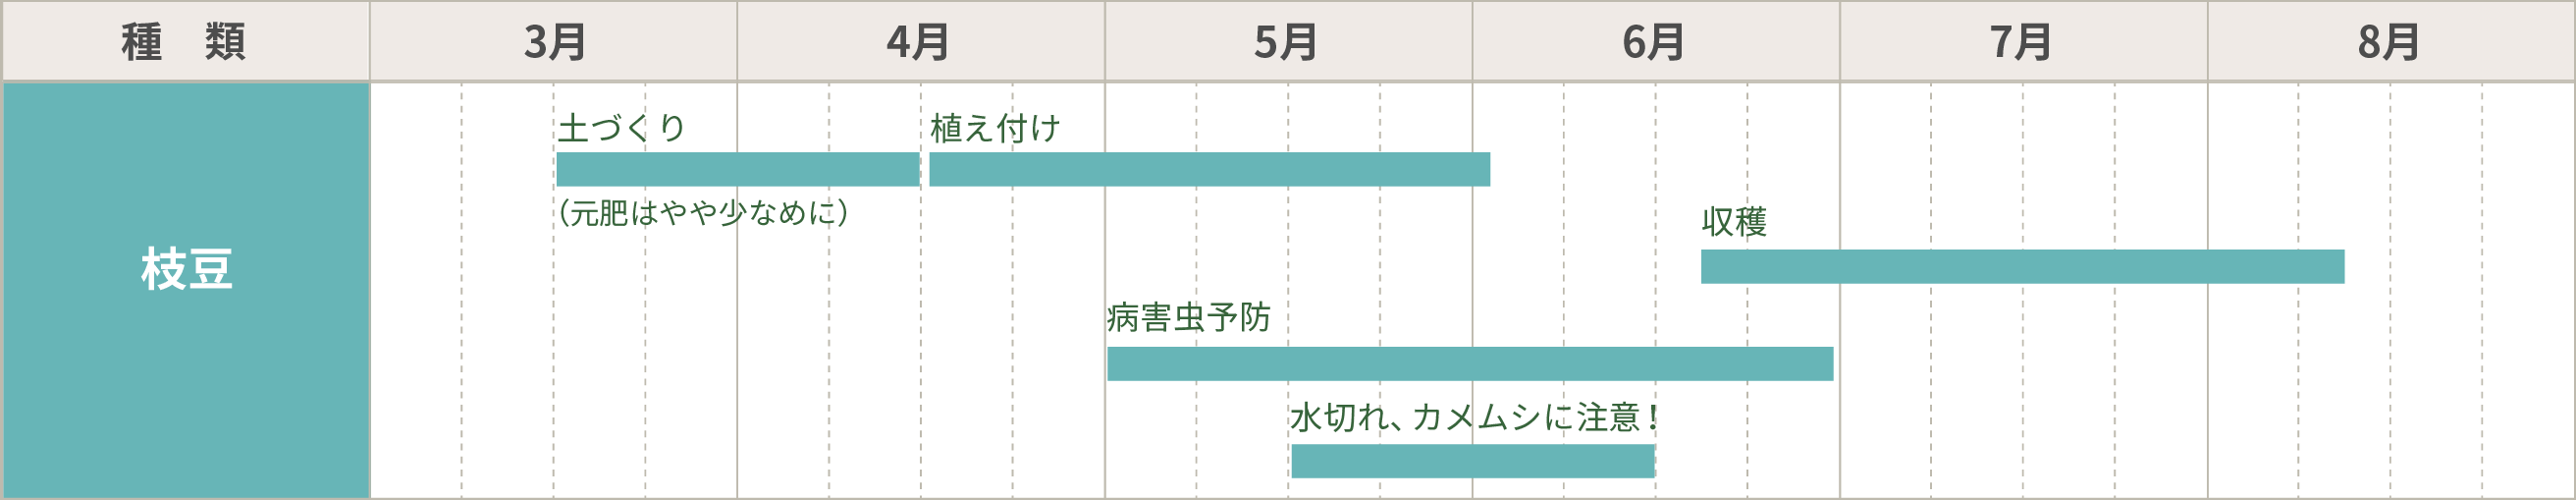 枝豆の栽培カレンダー